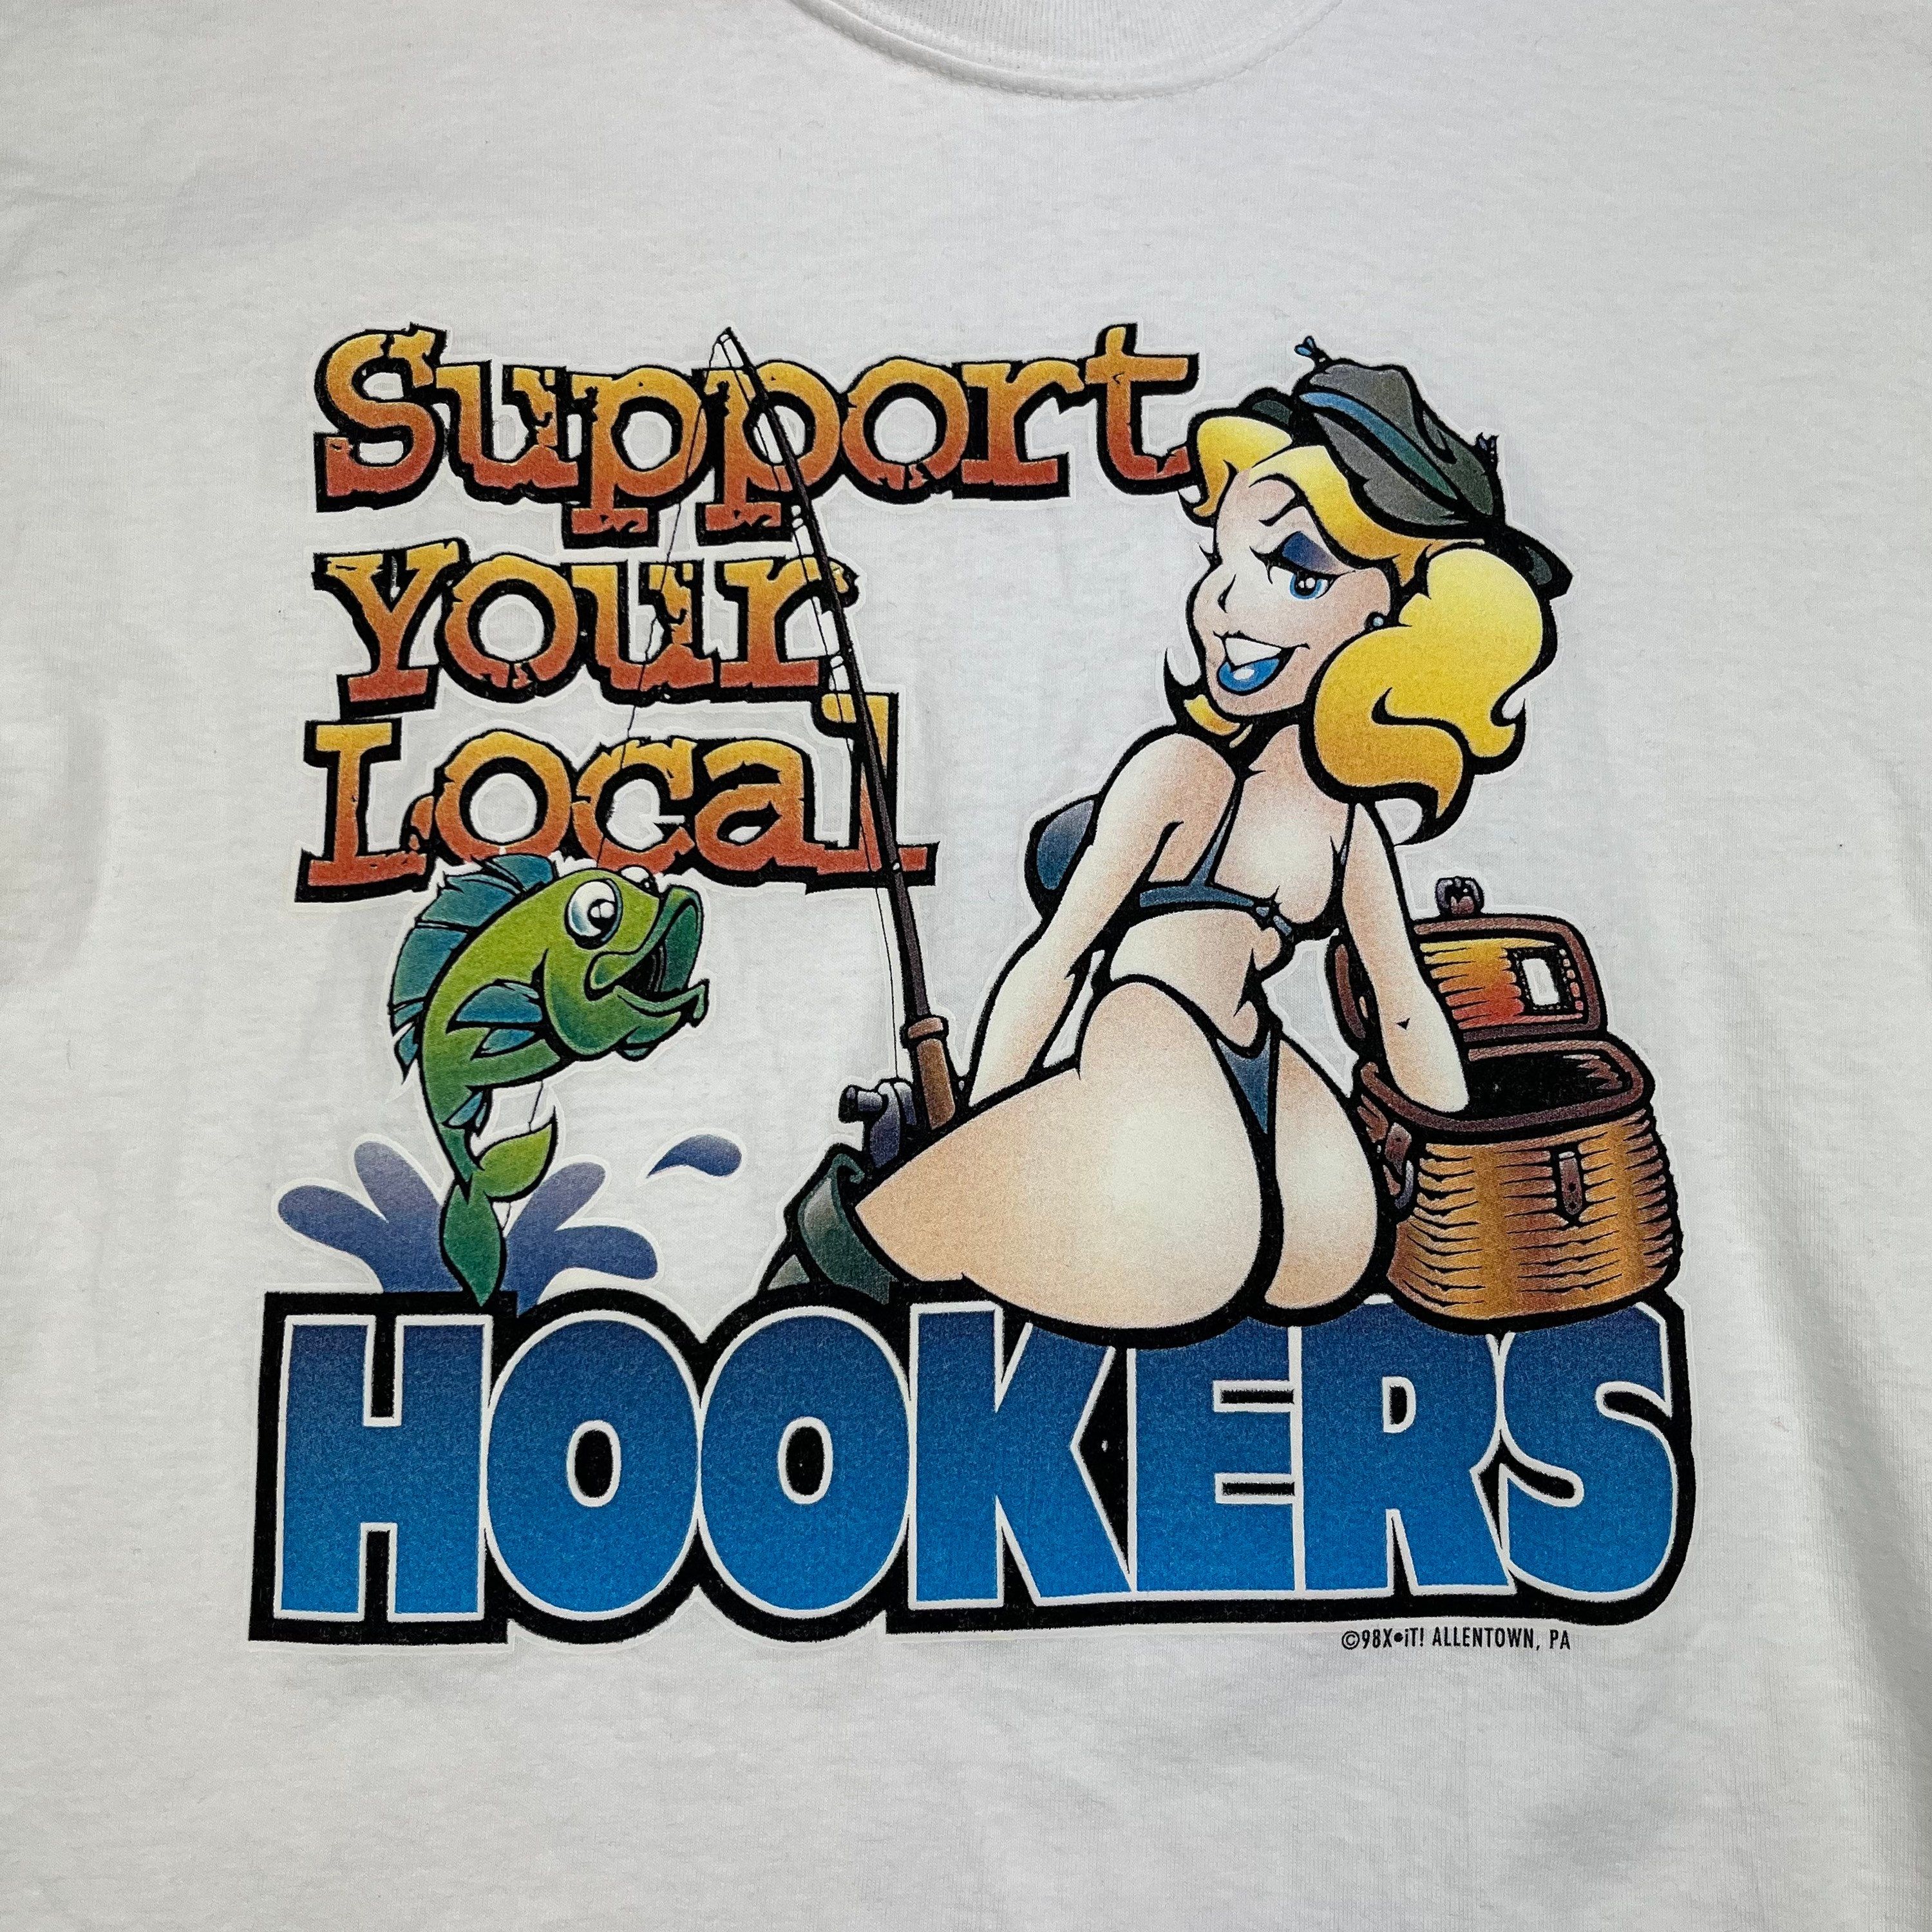 Local Hooker T Shirt 